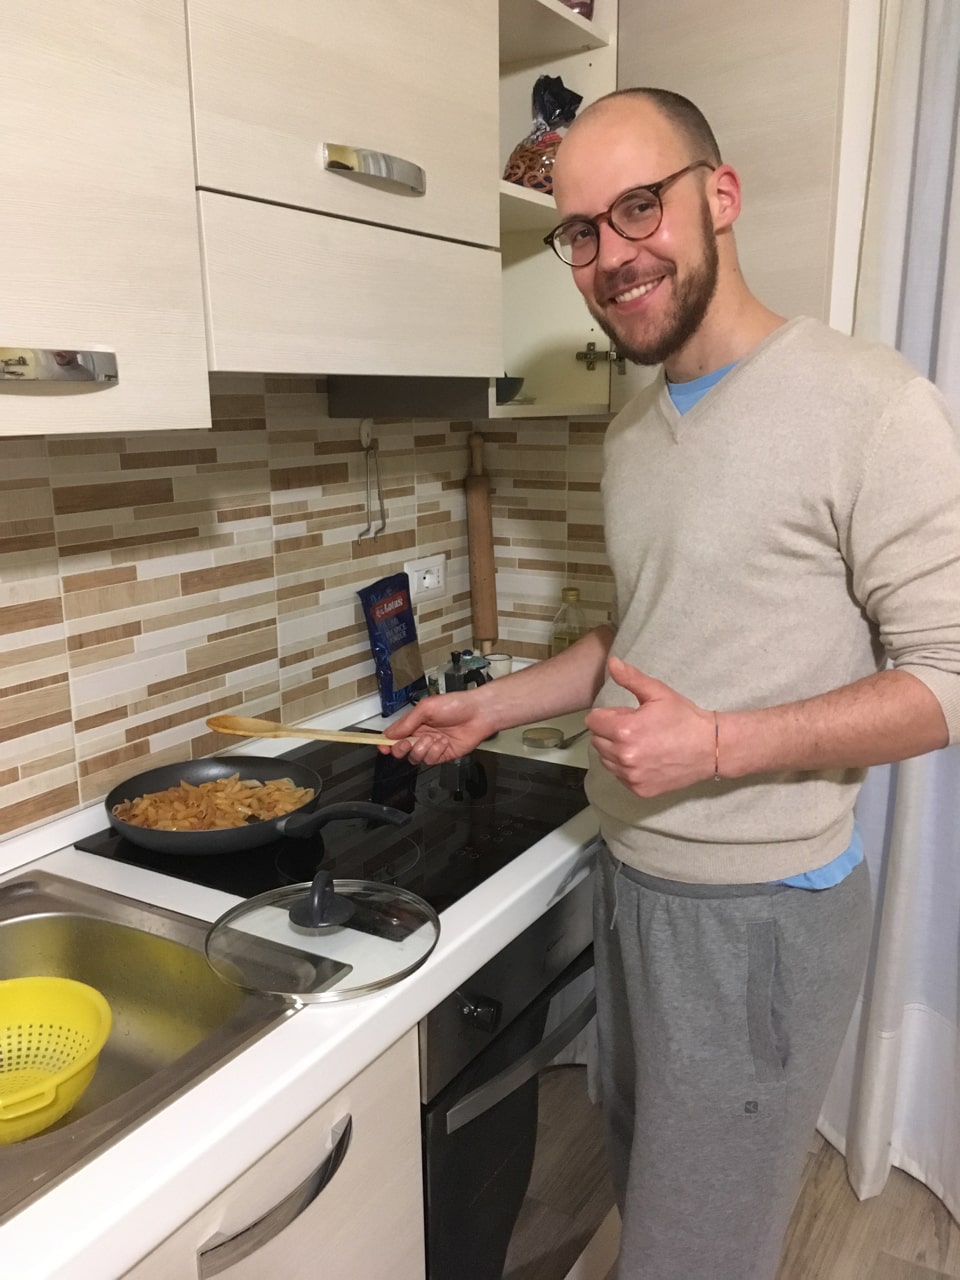 虽然我一点也不饿，但Antonio还是给我顺便做了份最正宗的意大利pasta